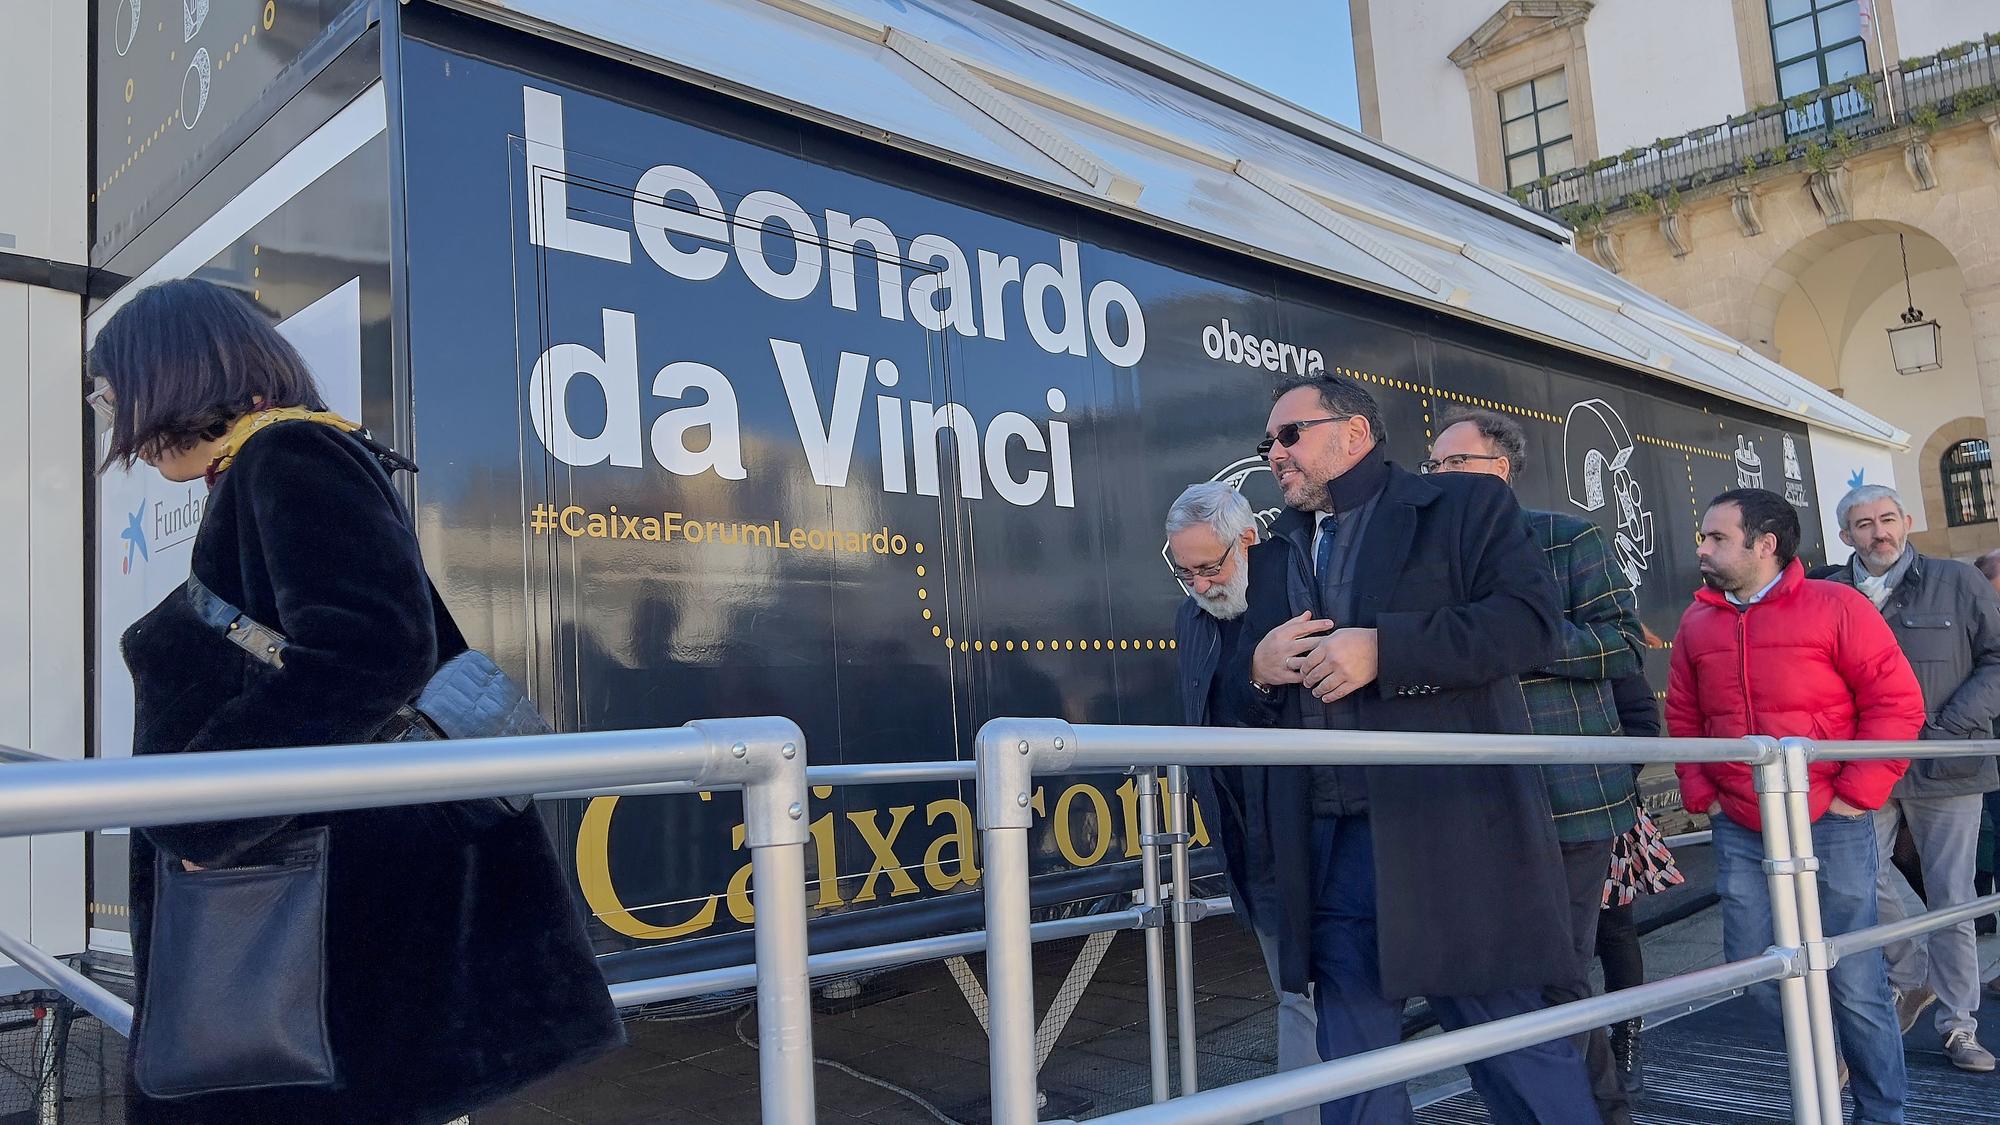 Exposición de Leonardo Da Vinci en Cáceres